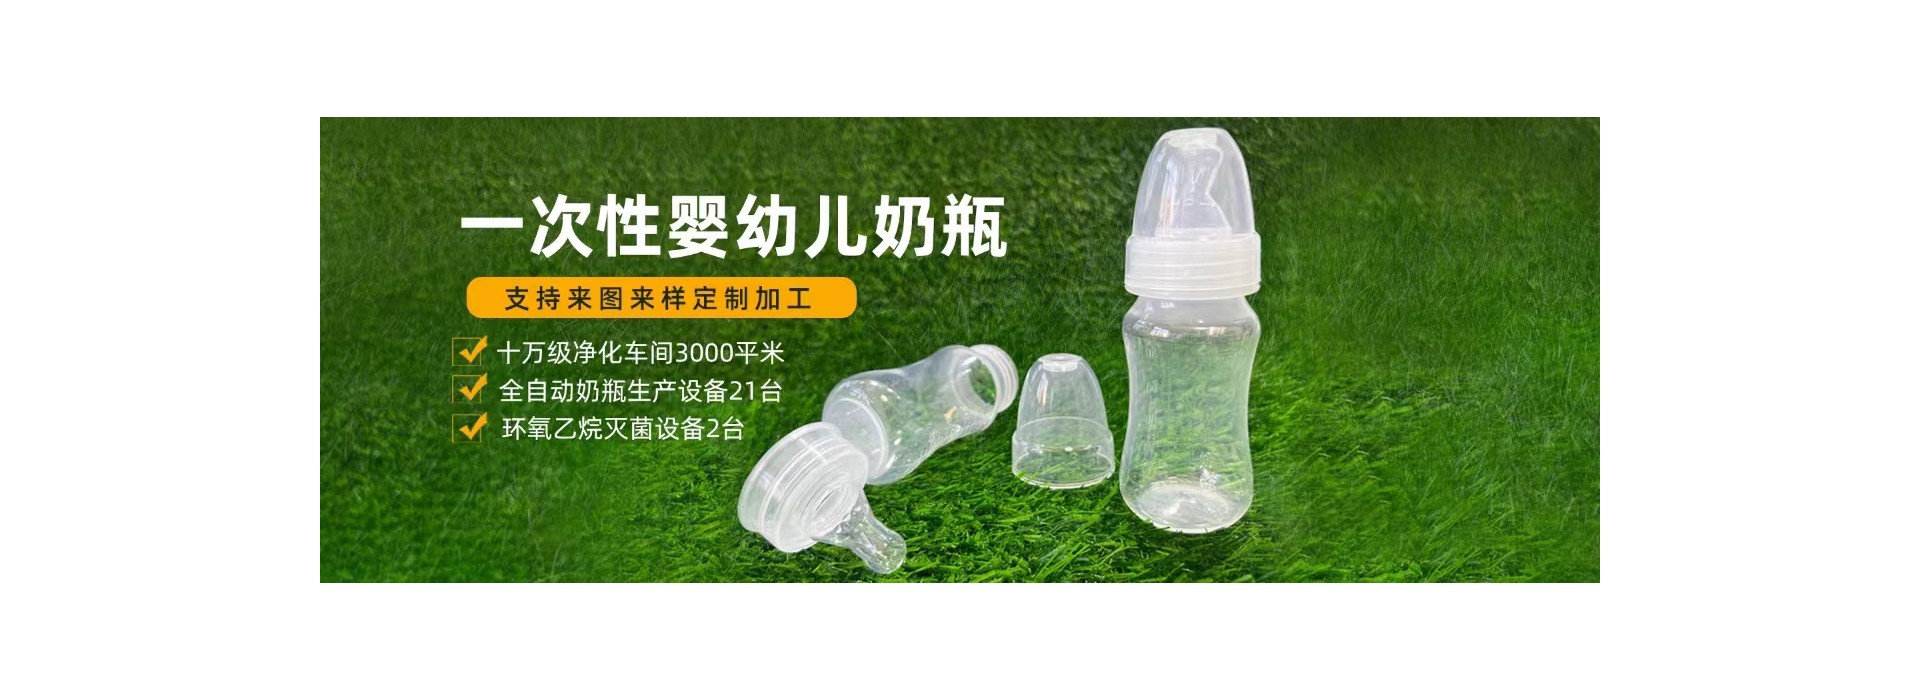 沧州毅泽佳塑料包装有限公司